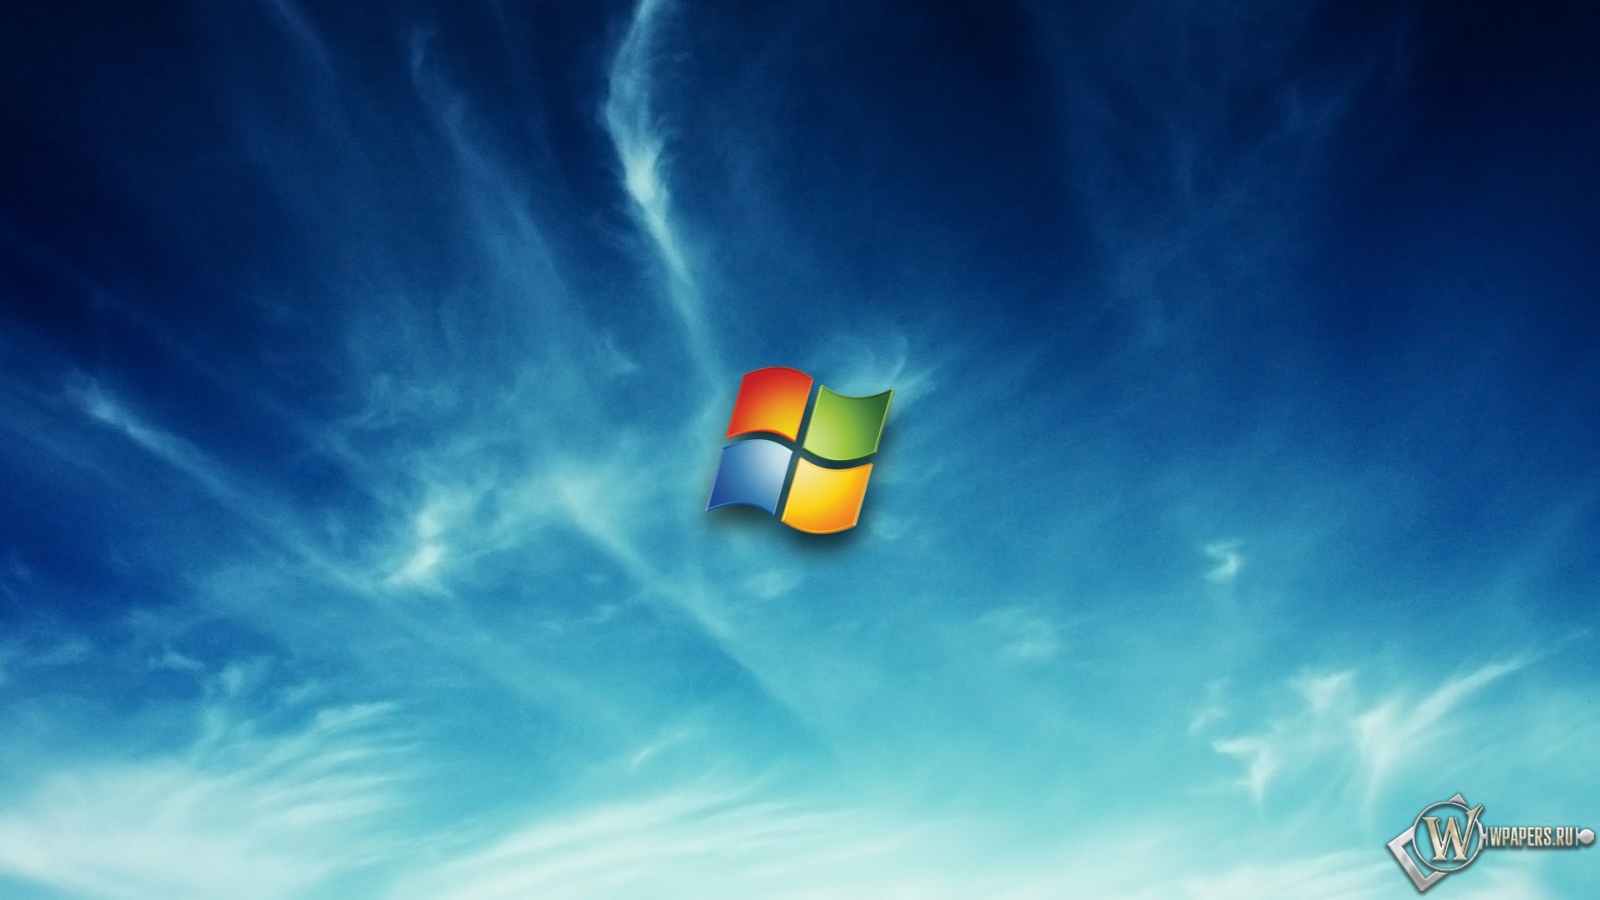 Windows в облаках 1600x900